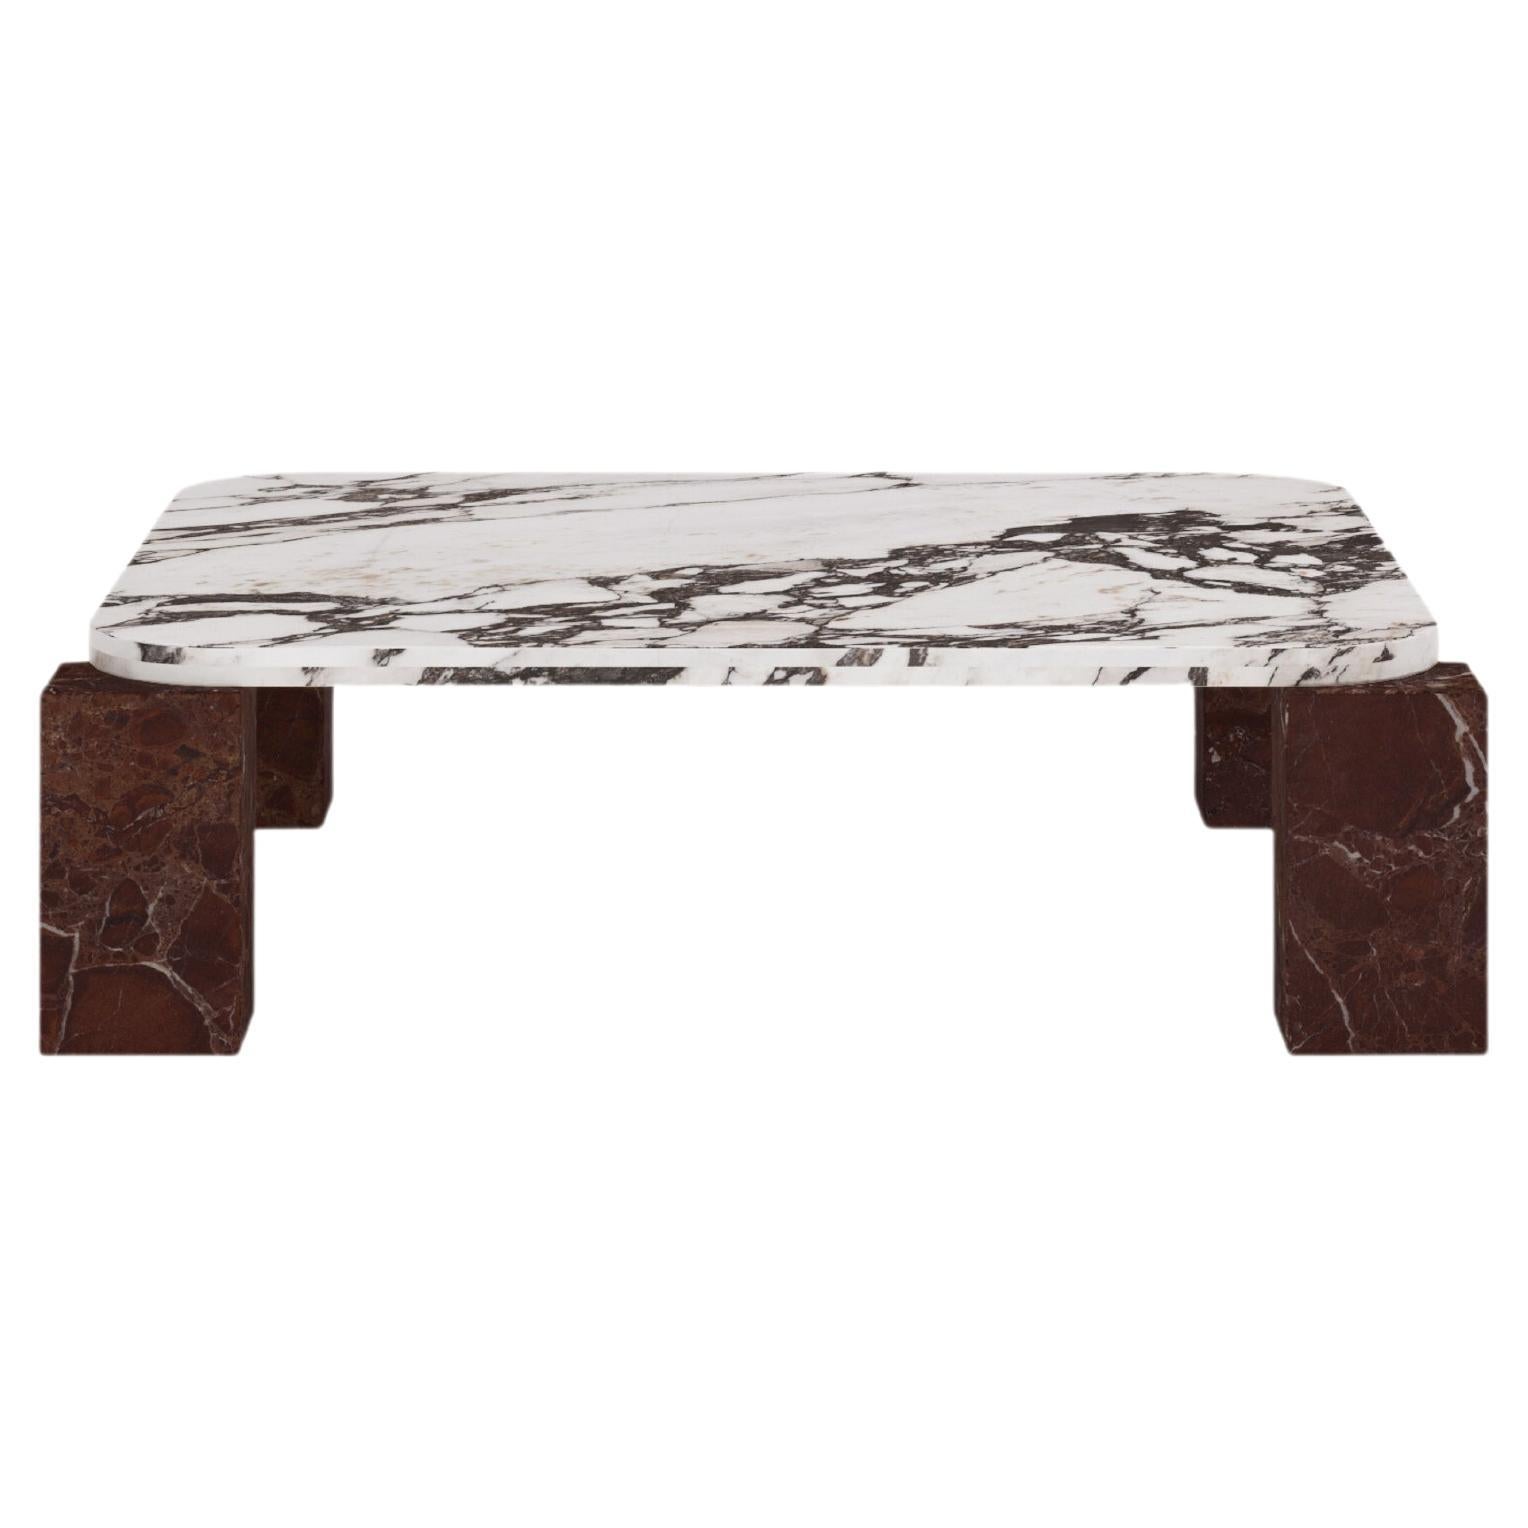 FORM(LA) Cubo Square Coffee Table 50”L x 50"W x 14”H Viola & Rosso Marble